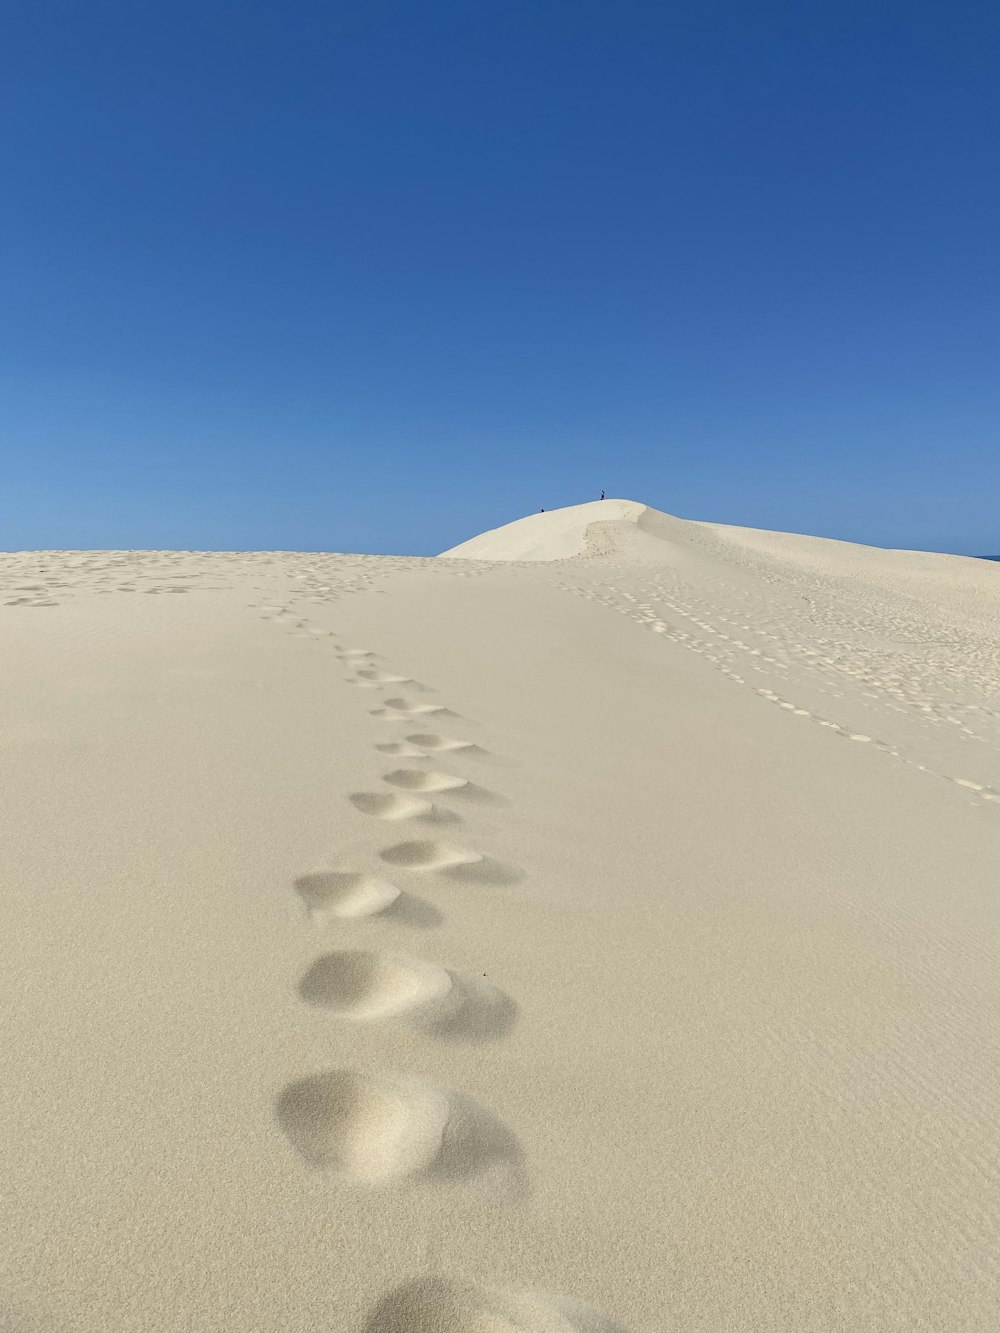 a desert with footprints